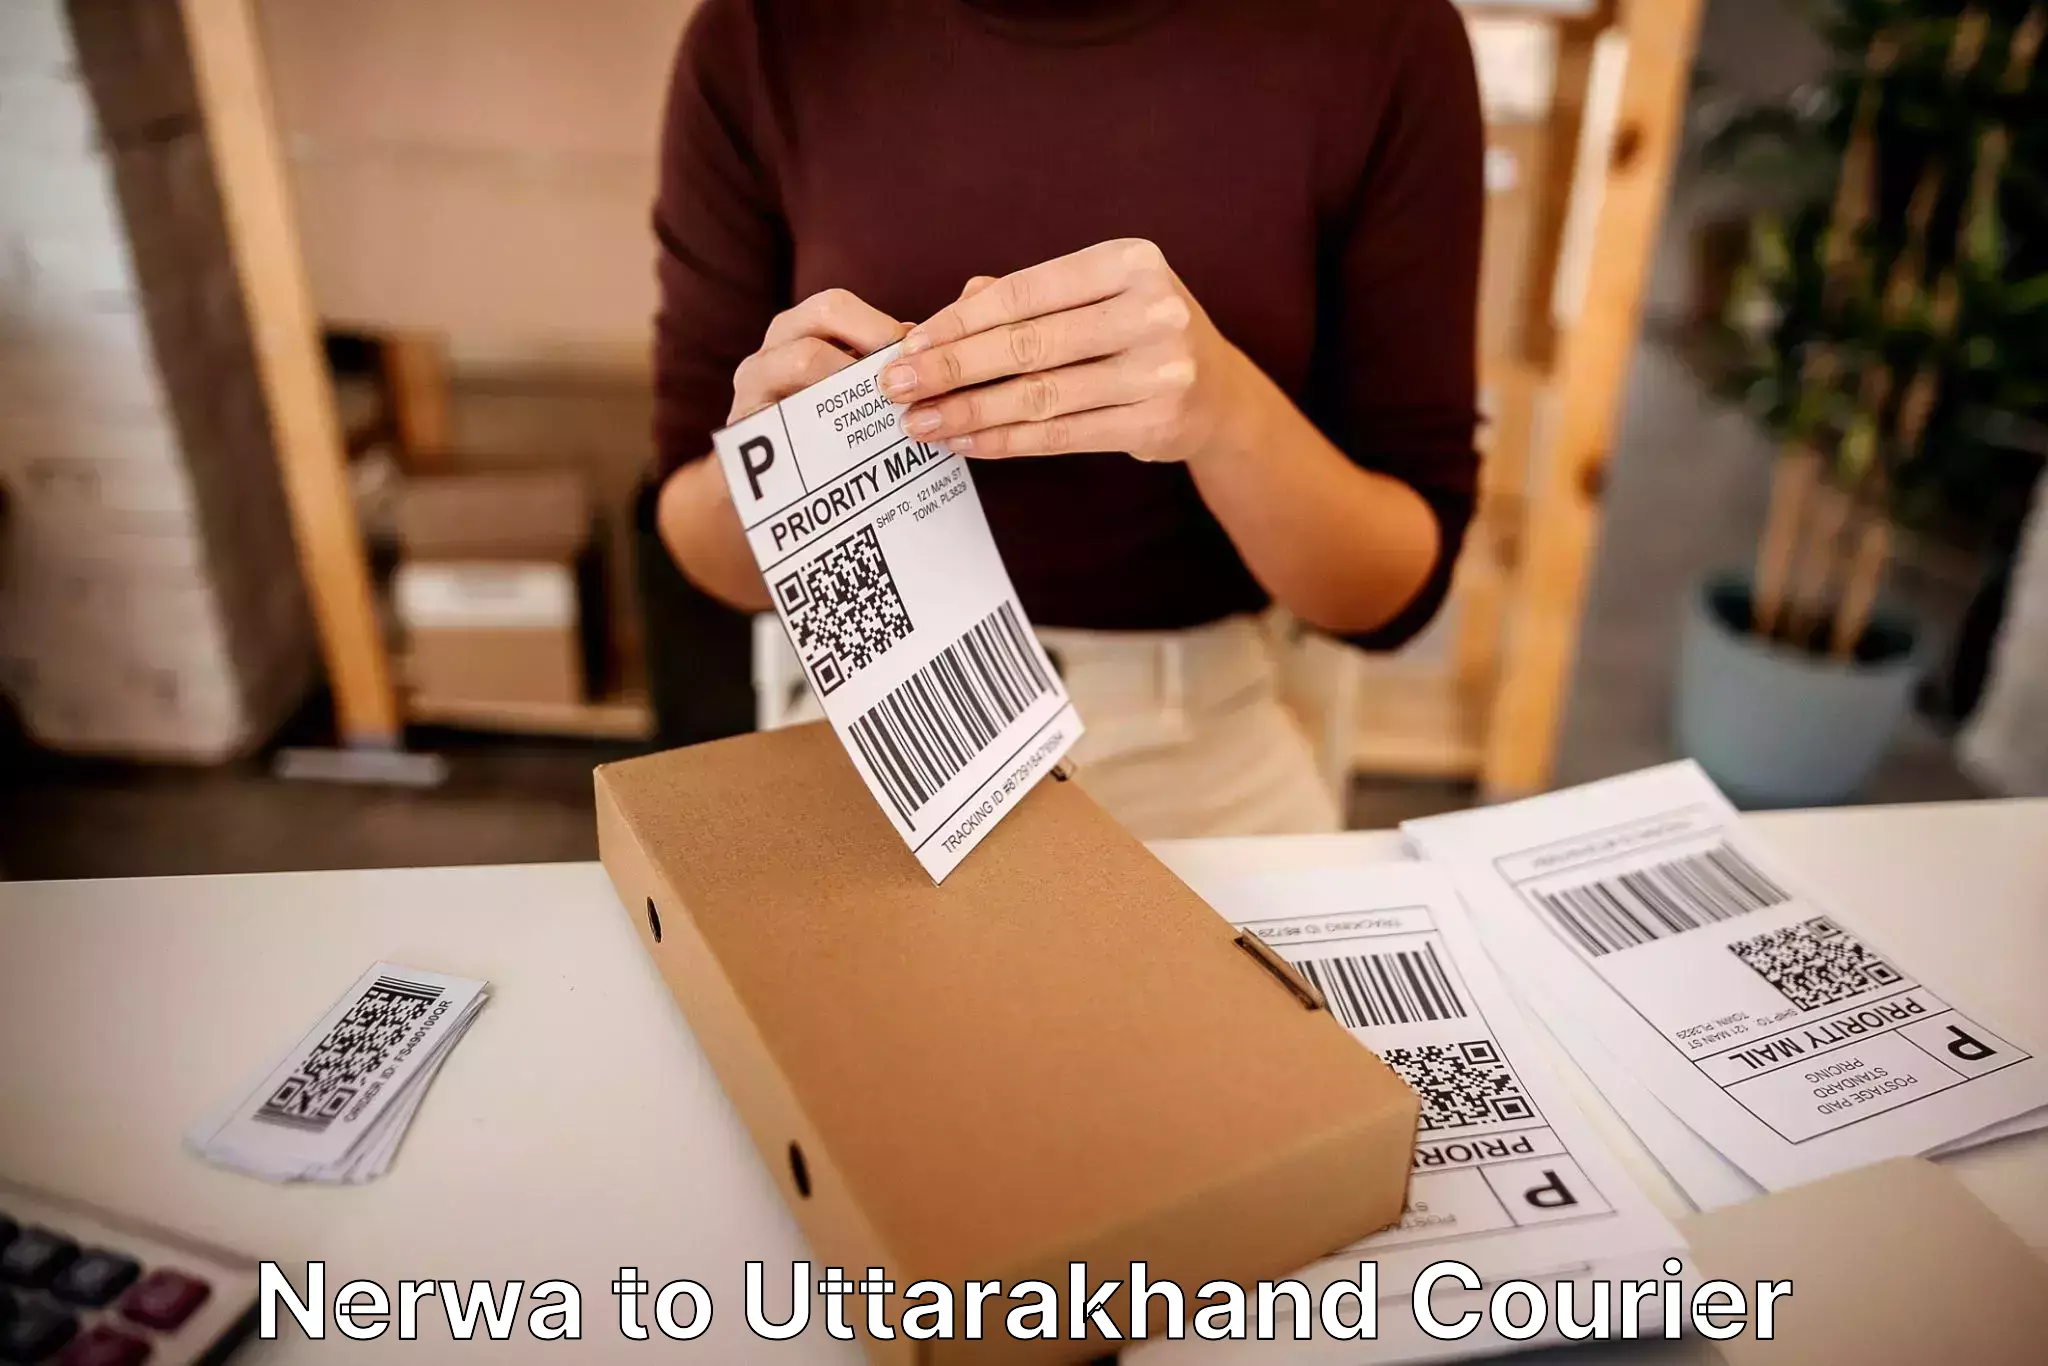 Home goods moving company Nerwa to Uttarakhand